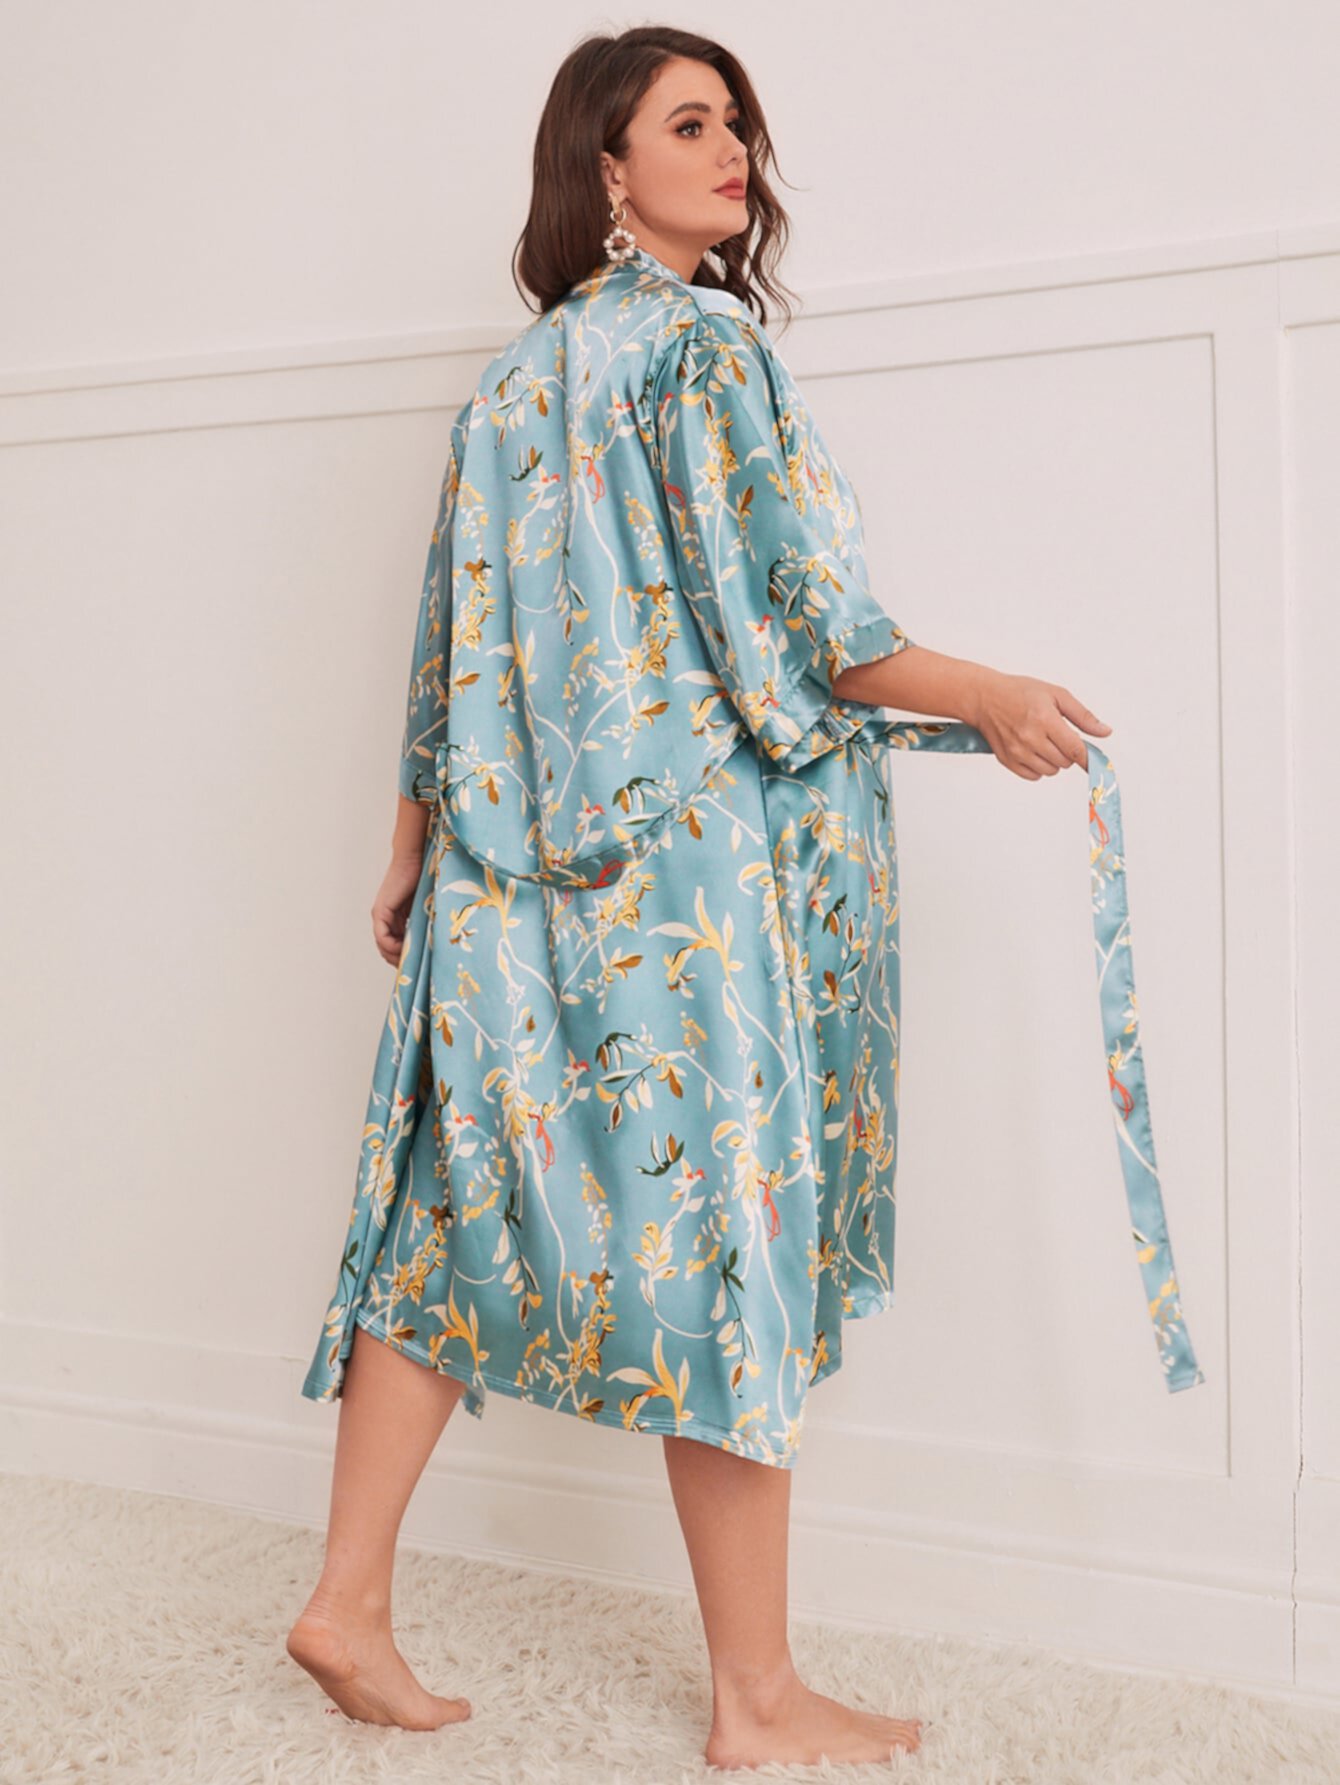 размера плюс с цветочным принтом с поясом из атласа Халат & Платье на бретелях Пижама SHEIN